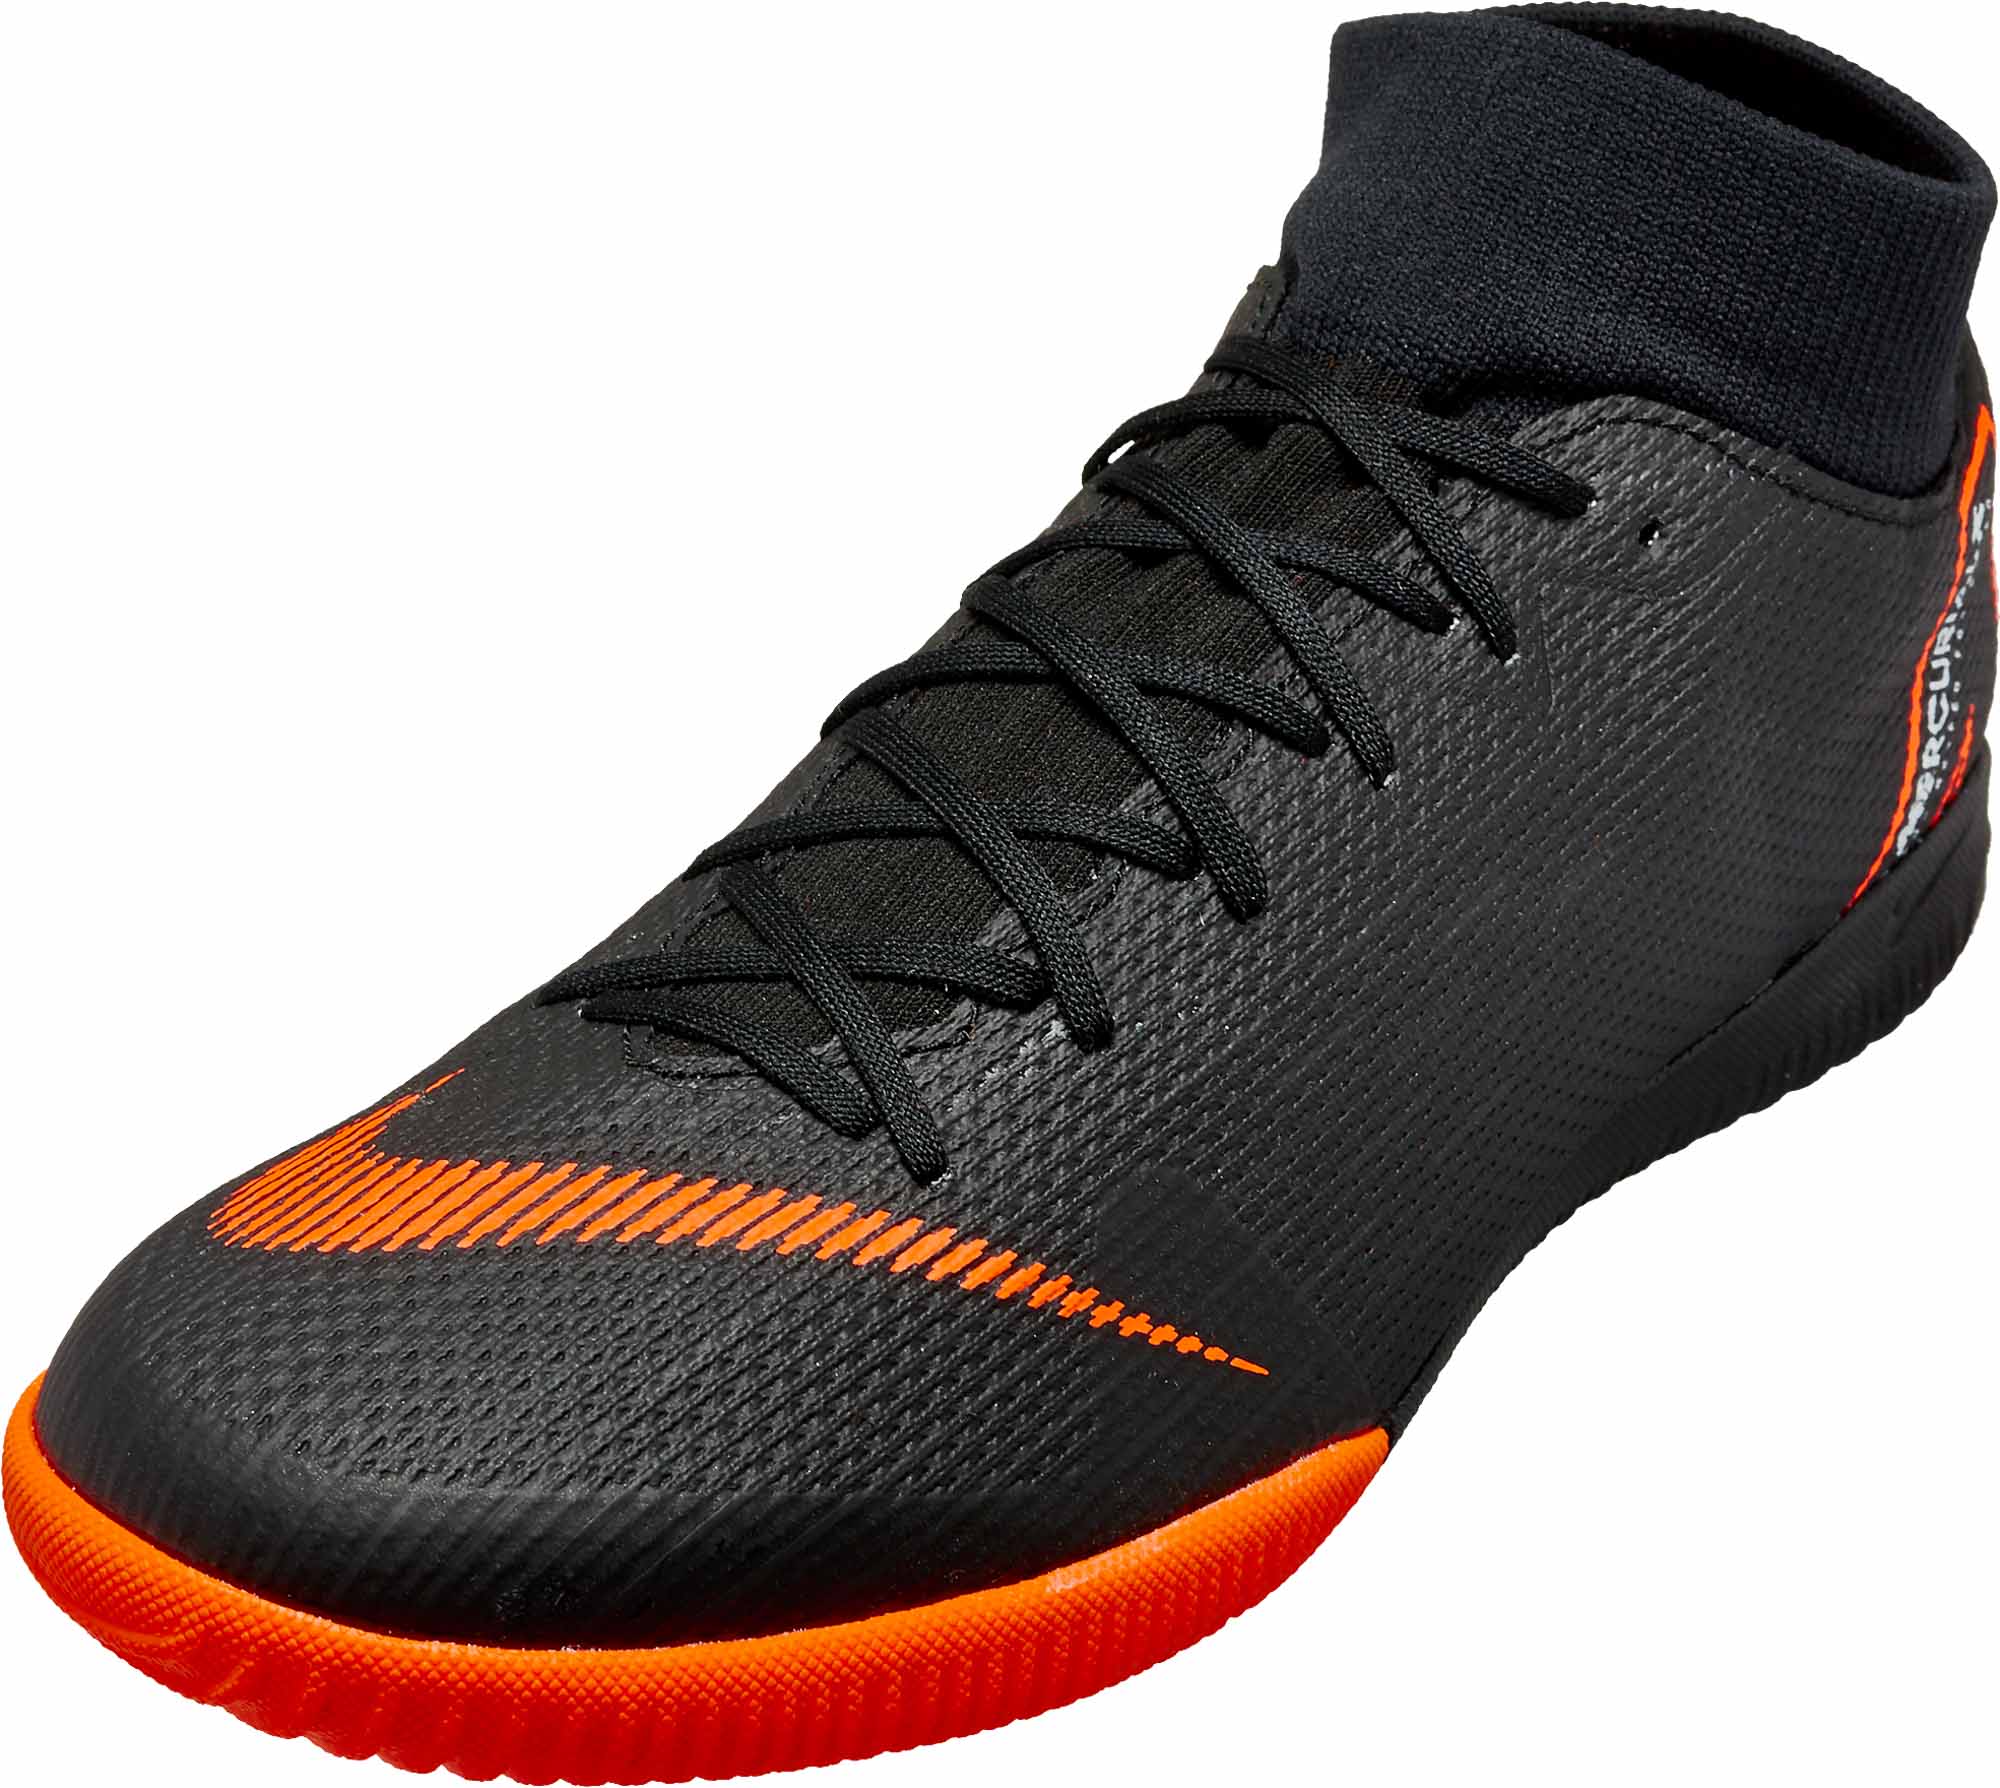 Nike SuperflyX 6 Academy IC - Black/Total Orange - SoccerPro